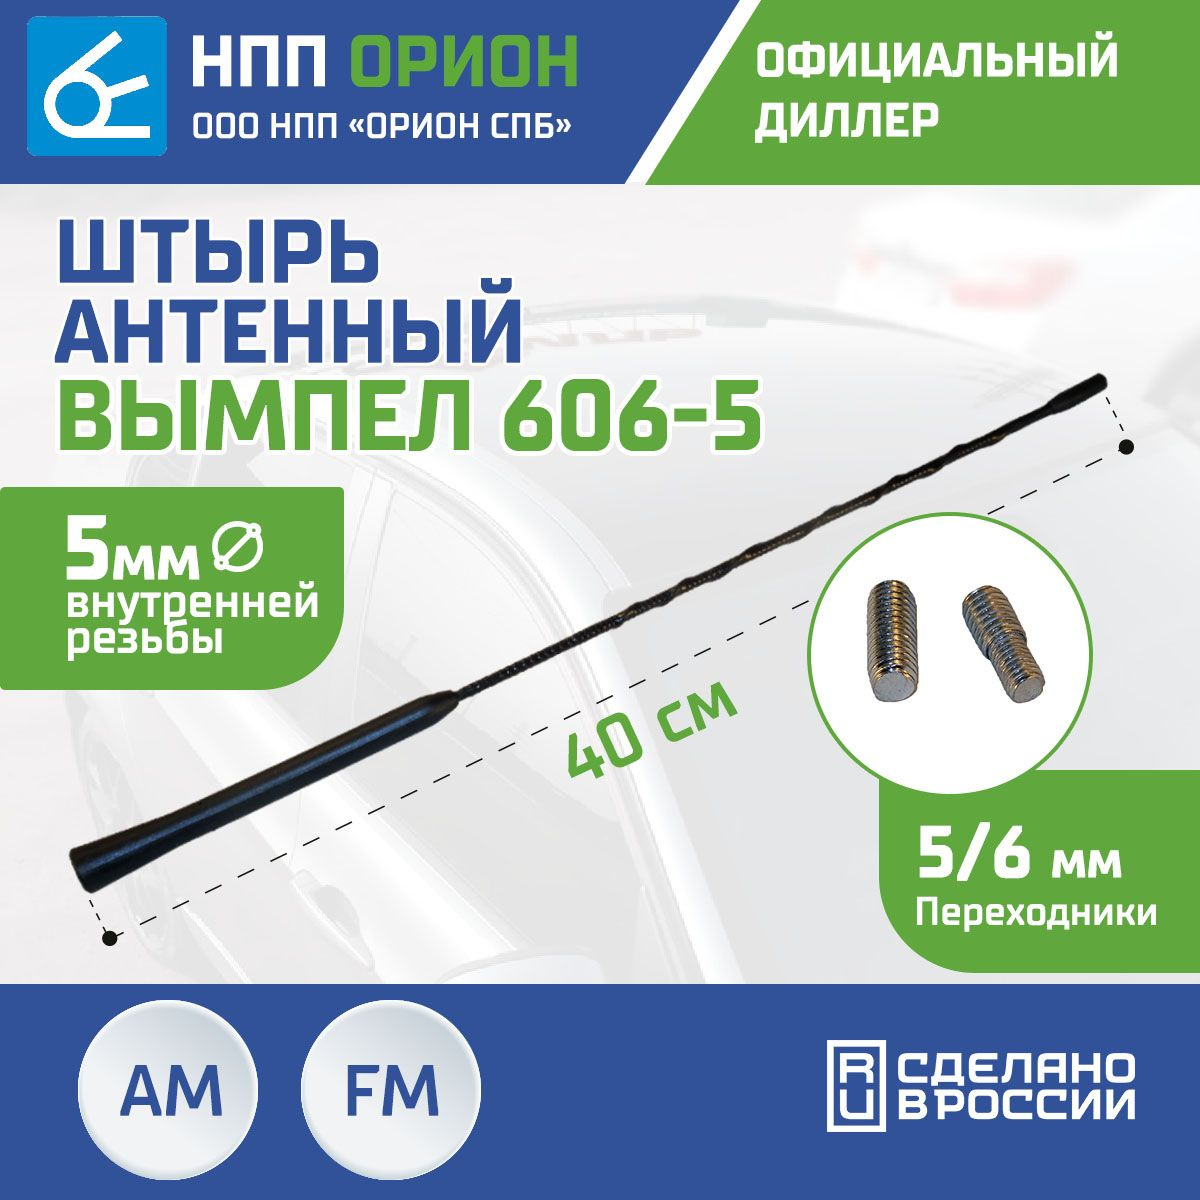 Антенна автомобильная Вымпел 606-5 (40см, 5мм)